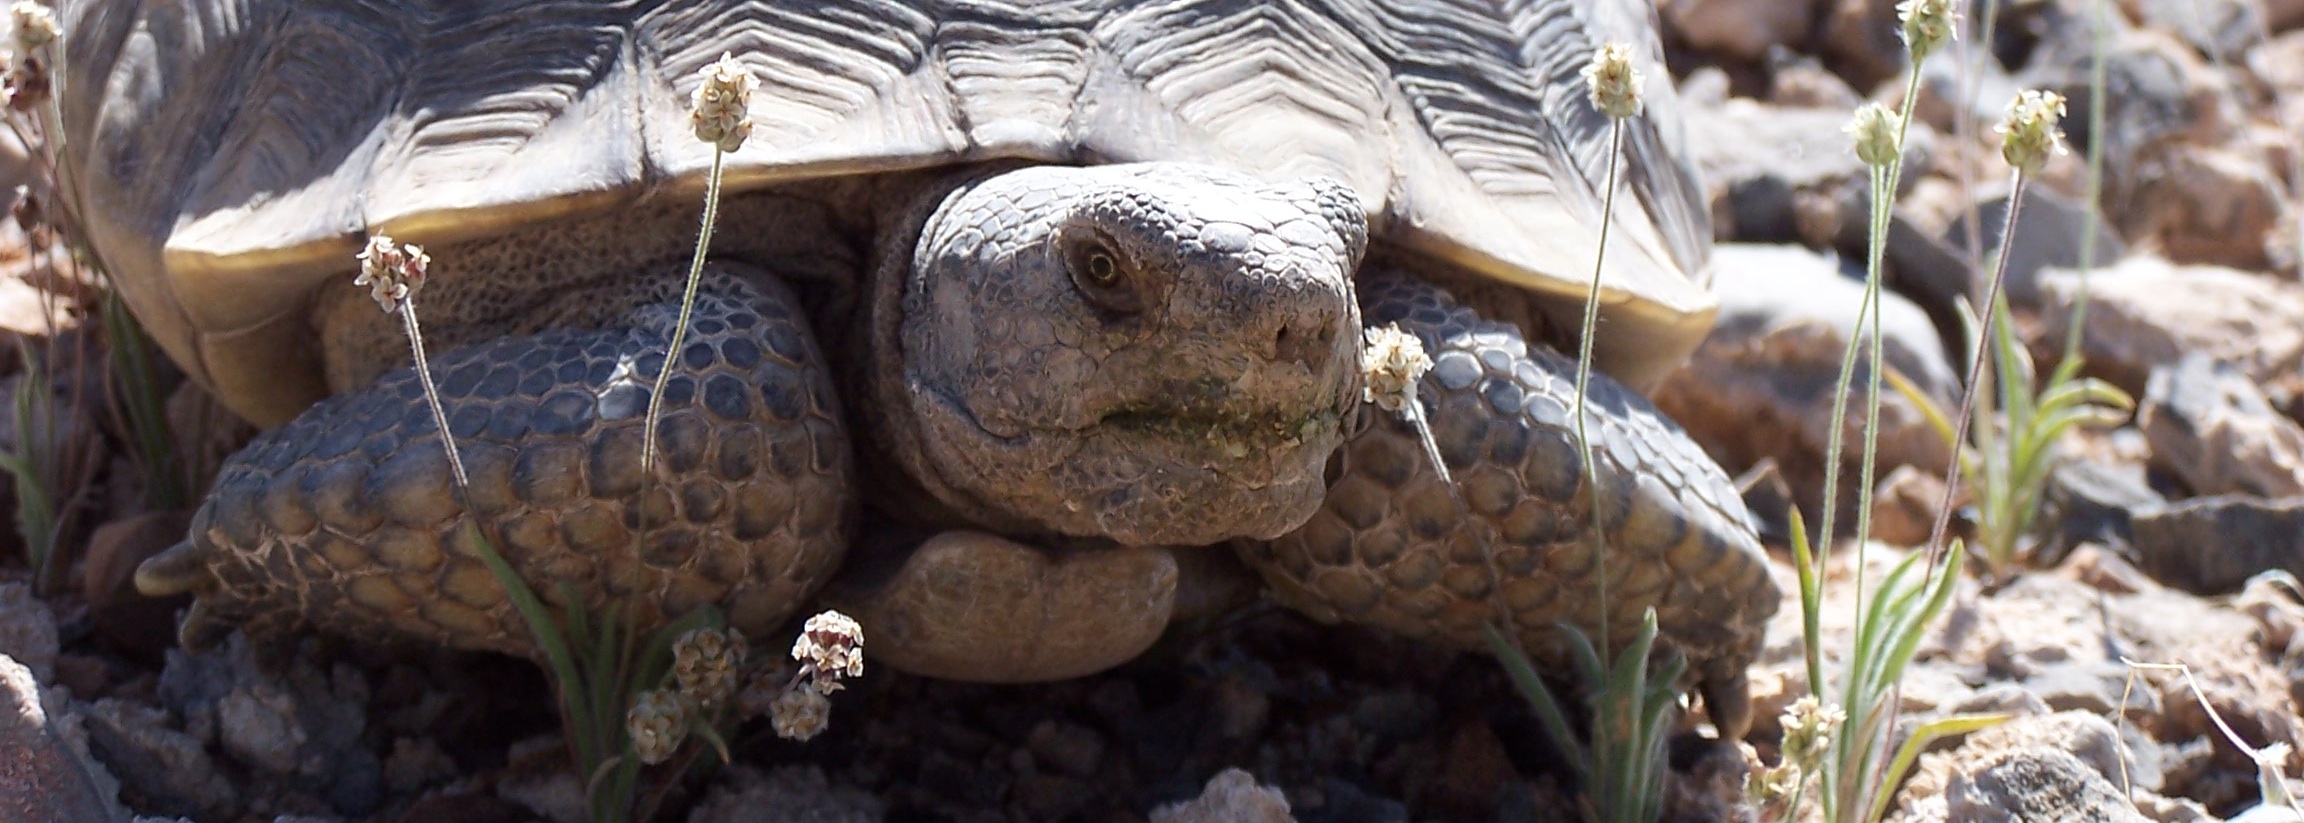 Mojave Desert Tortoise: see Clark County Science Advisor Description